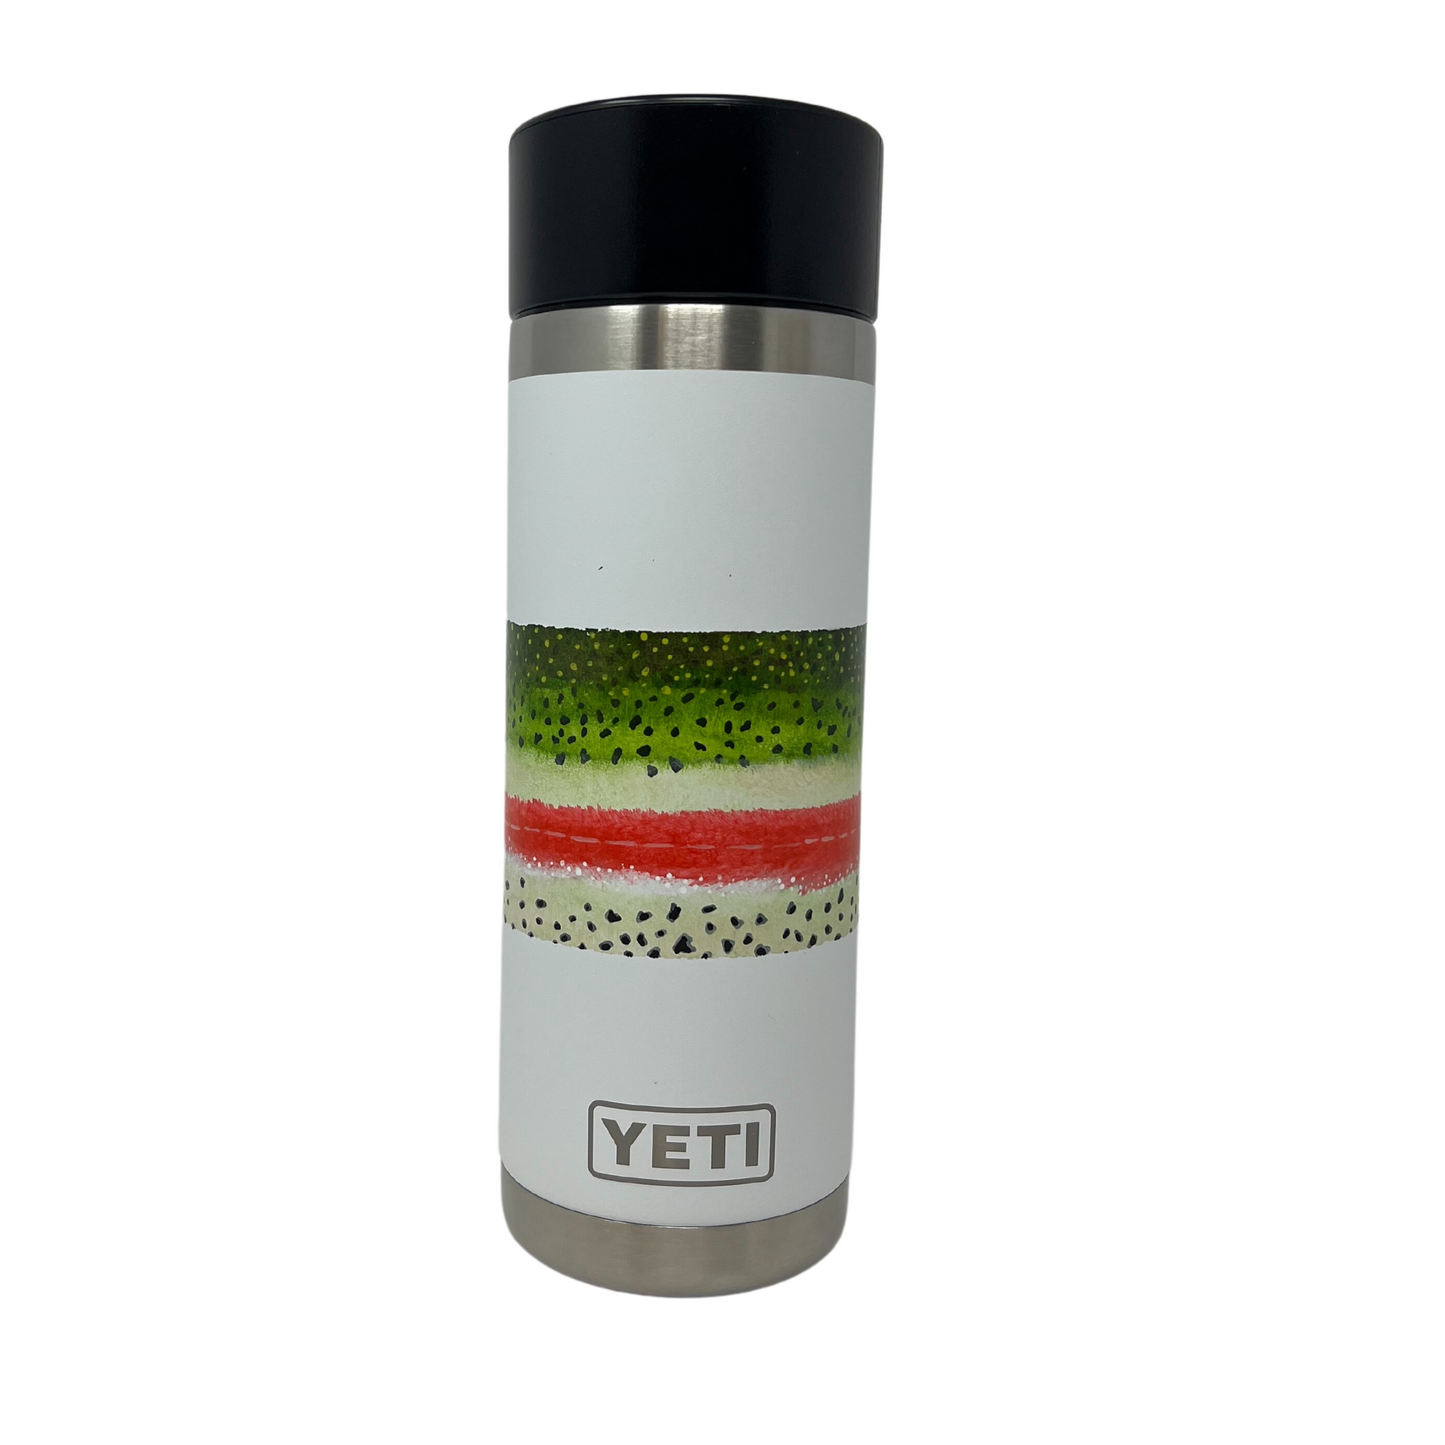 YETI - Rambler 18oz Bottle With Hotshot Cap - Artist Series - Leanna Isayew